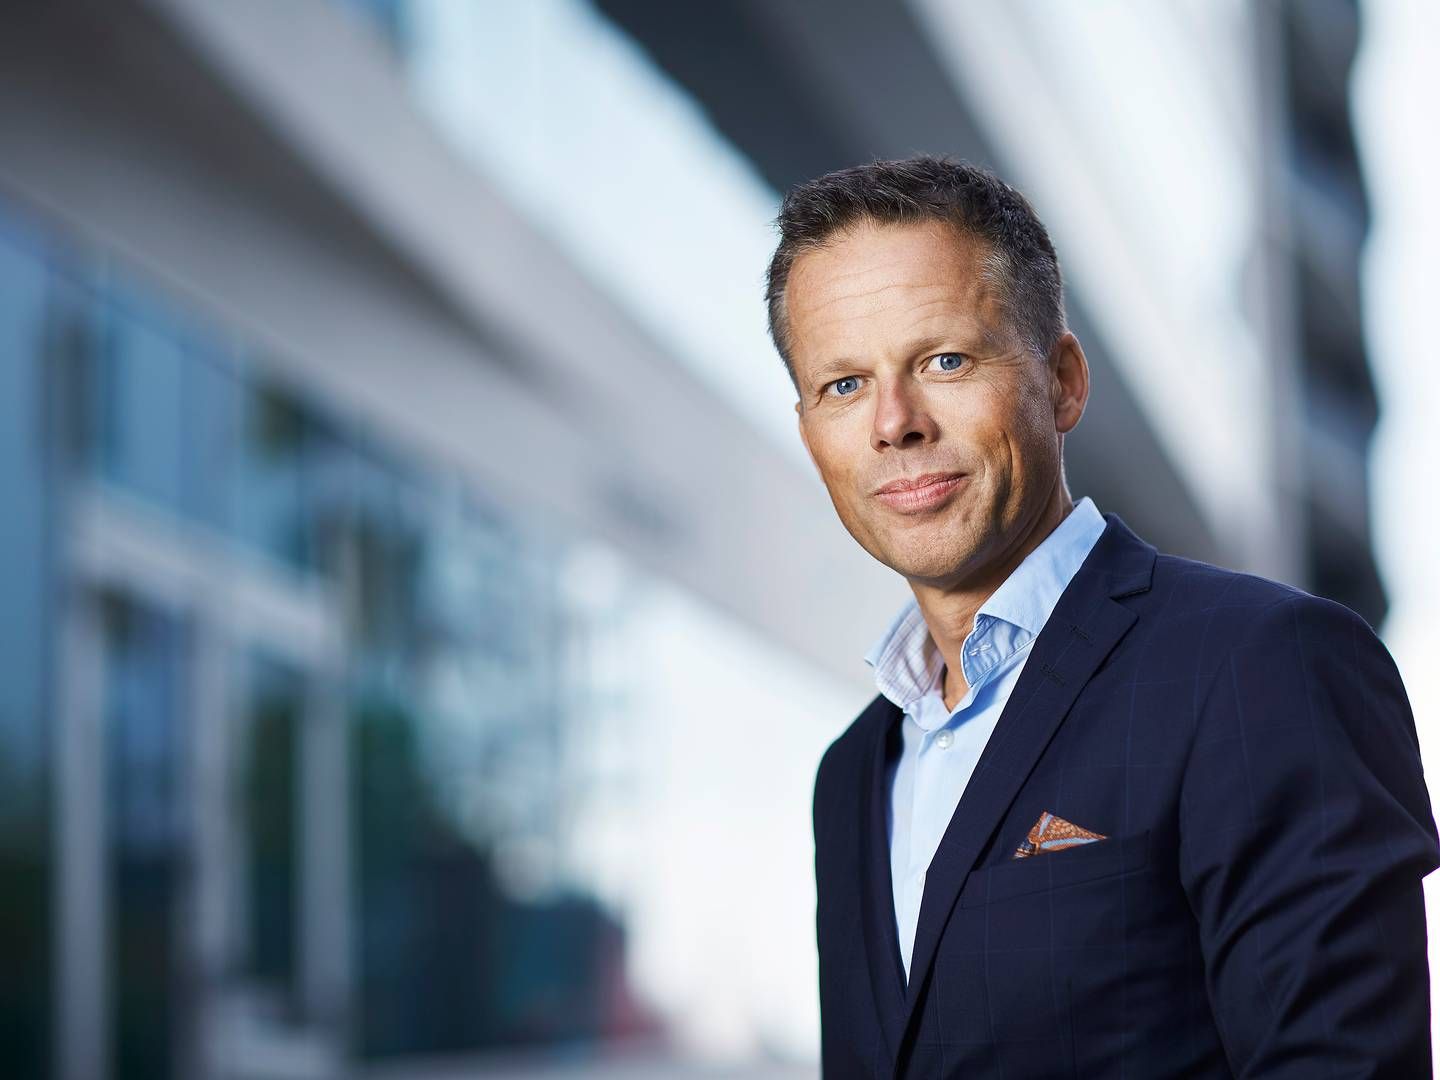 SATSER: Handelsbankens ledelse har stor tro på videre personmarkedsvirksomhet, forteller markeds- og kommunikasjonsdirektør Lars N. Sæthre i Handelsbanken.